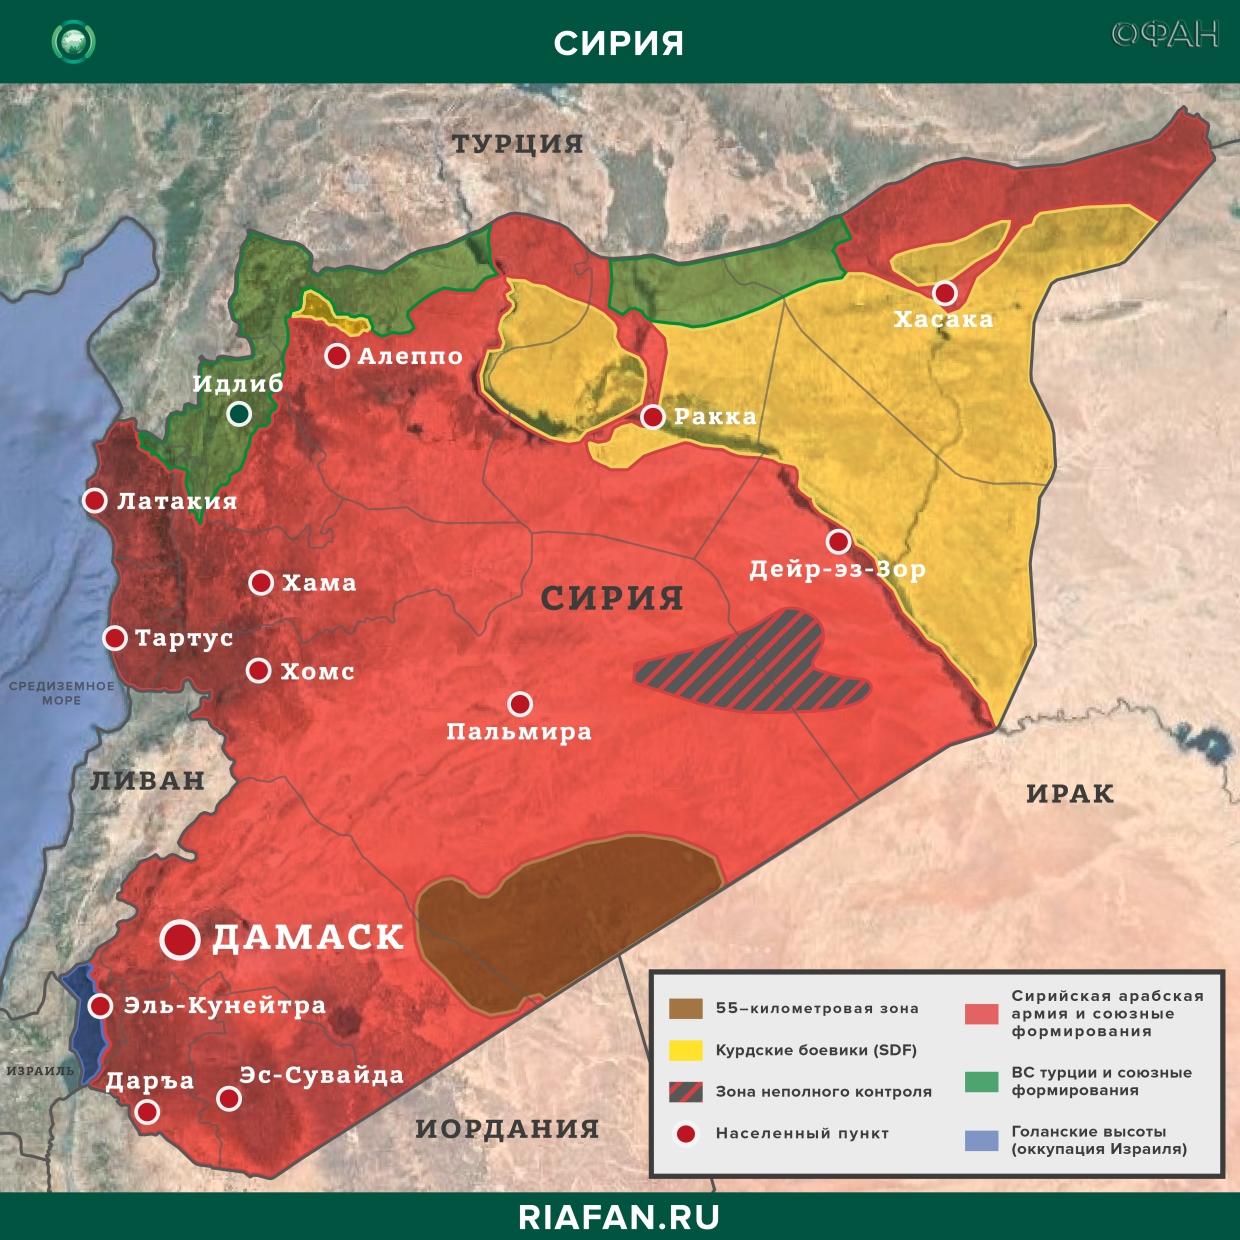 Nouvelles de Syrie 1 Mars 19.30: сирийские системы ПВО будут сбивать все вражеские цели над Идлибом, провокации боевиков в Даръа